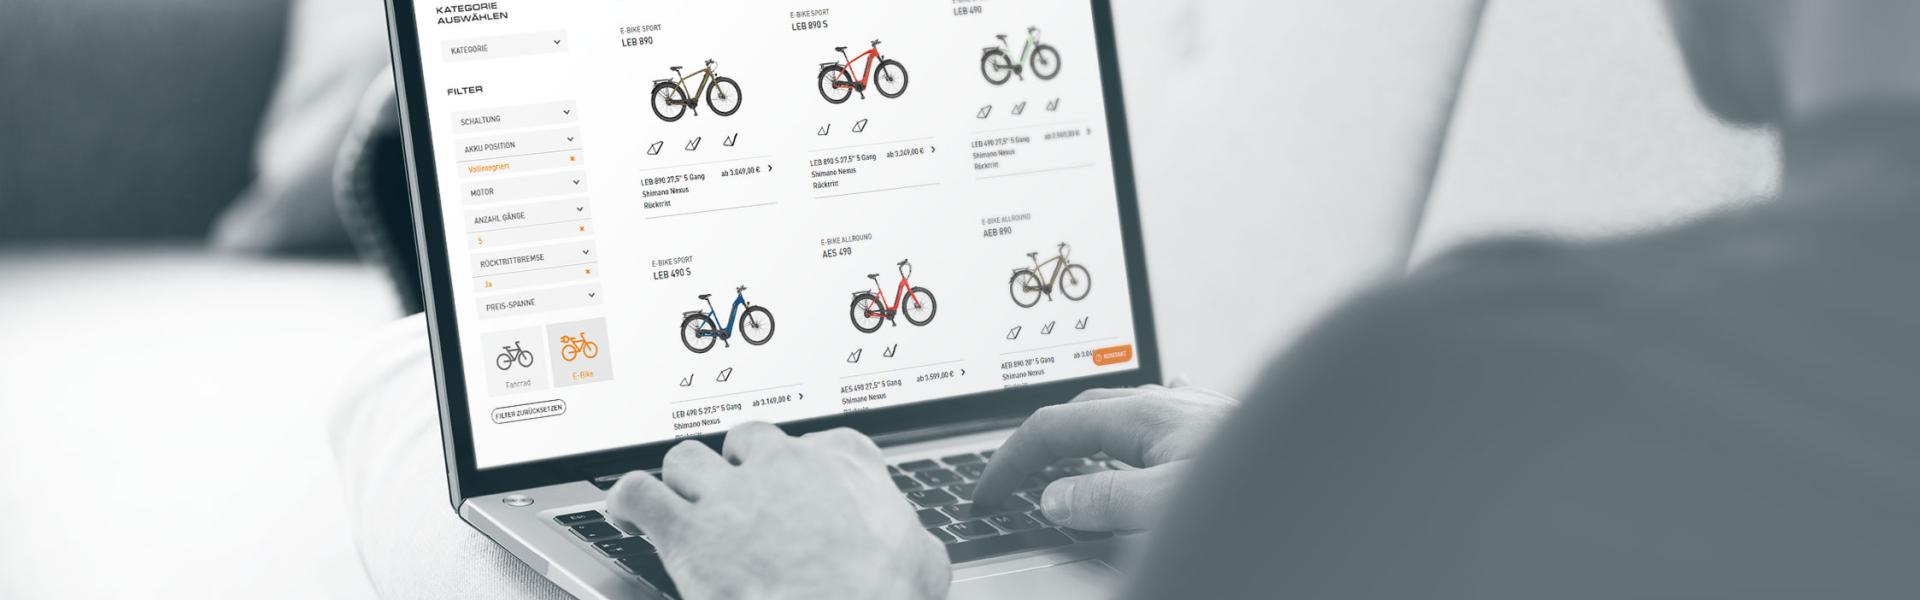 Online Shops für Fahrradhersteller